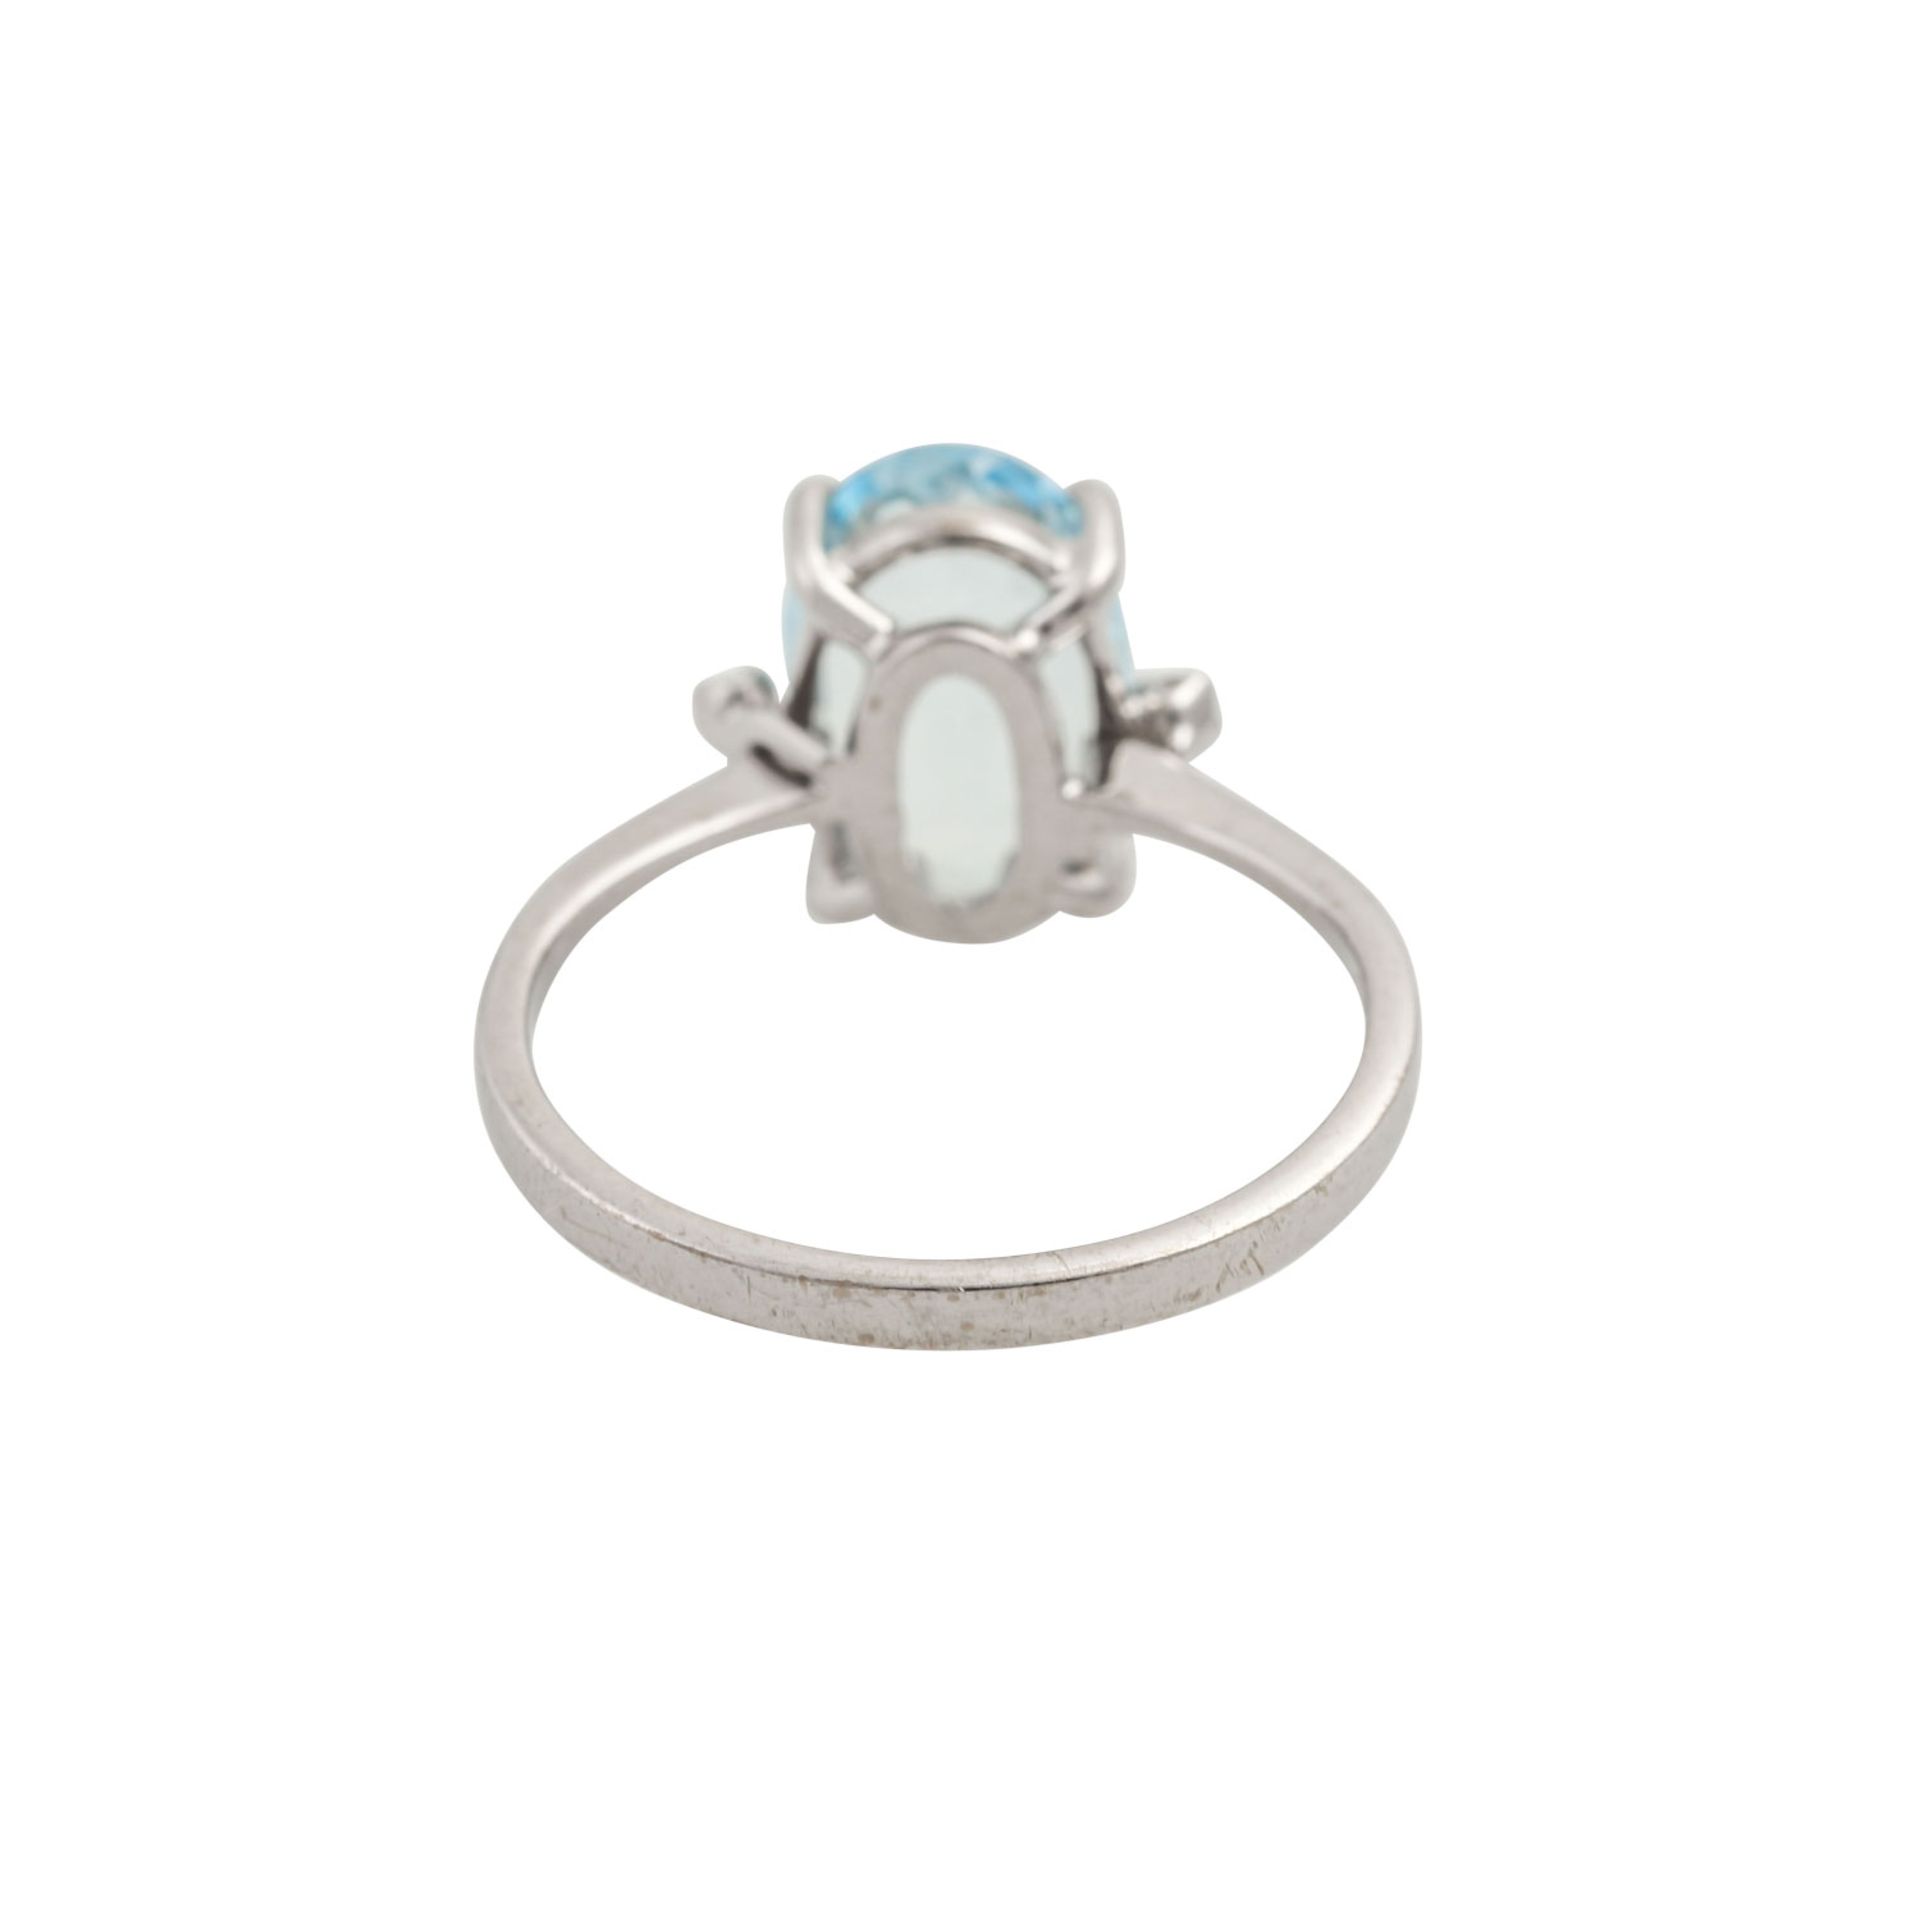 Ring mit oval facettiertem Aquamarin und 2 Achtkantdiamanten, WG 18K, 3,2 g, RW: 55, 2 - Bild 4 aus 4